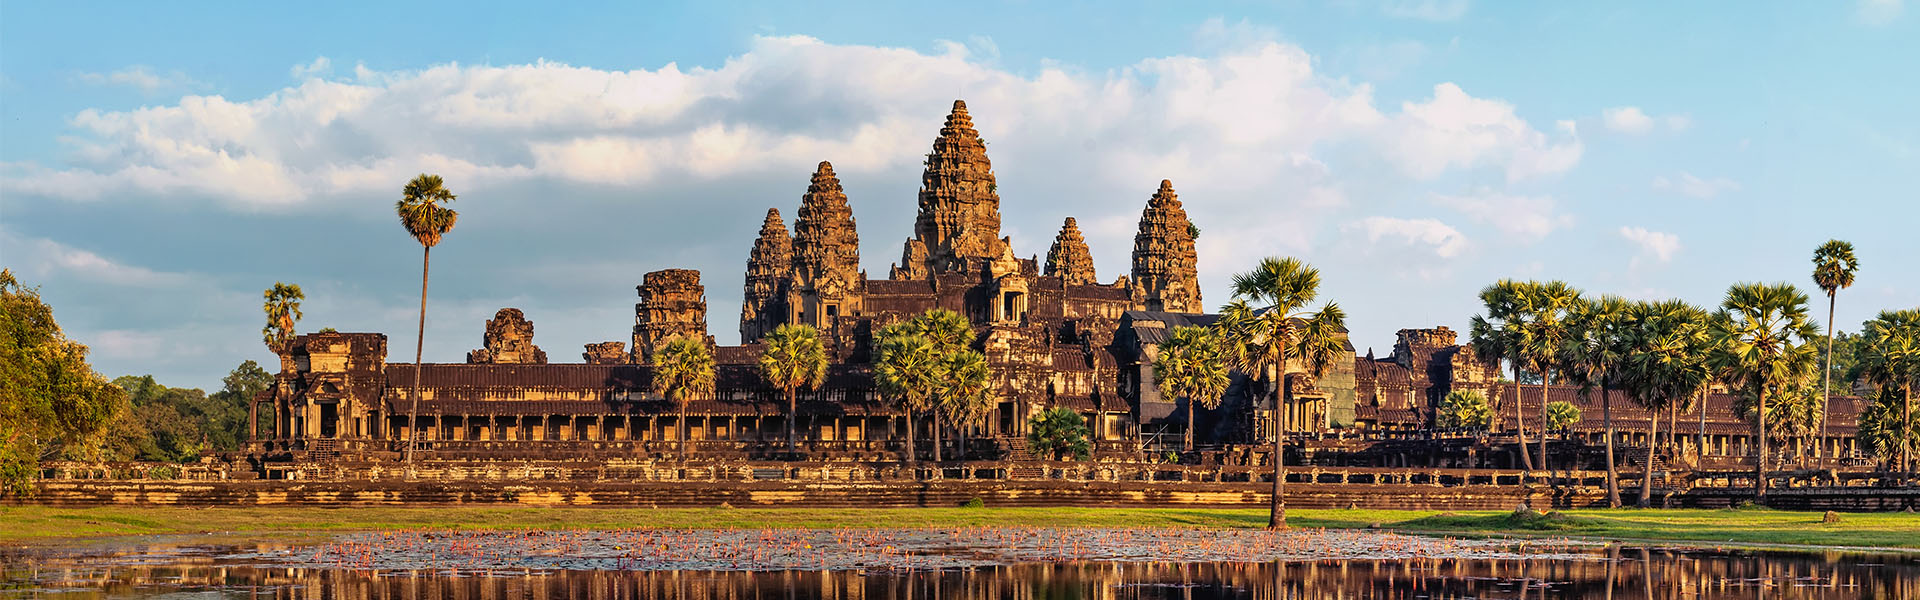 agence voyage france cambodge